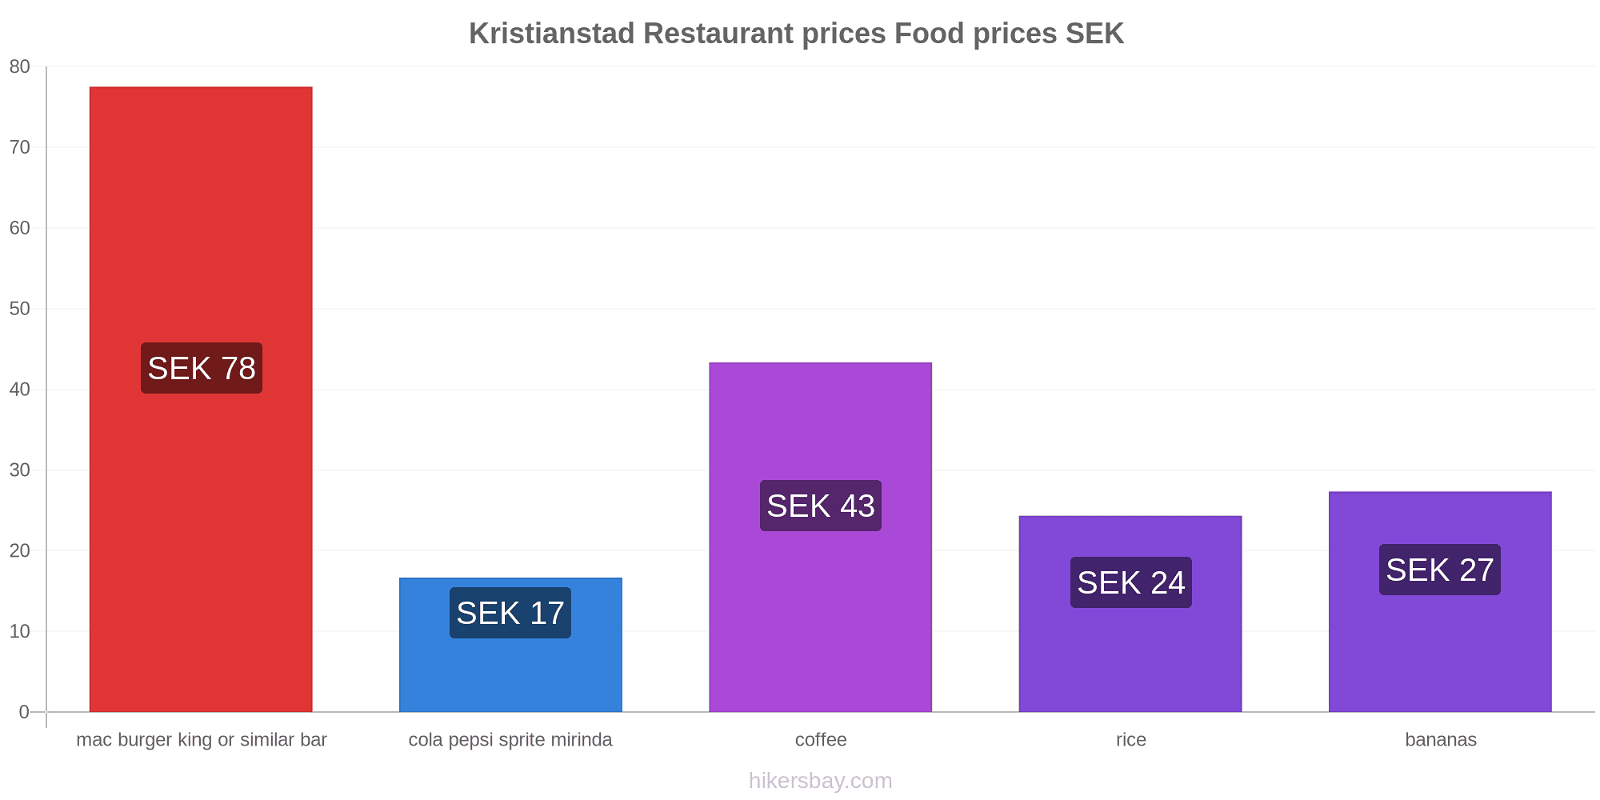 Kristianstad price changes hikersbay.com